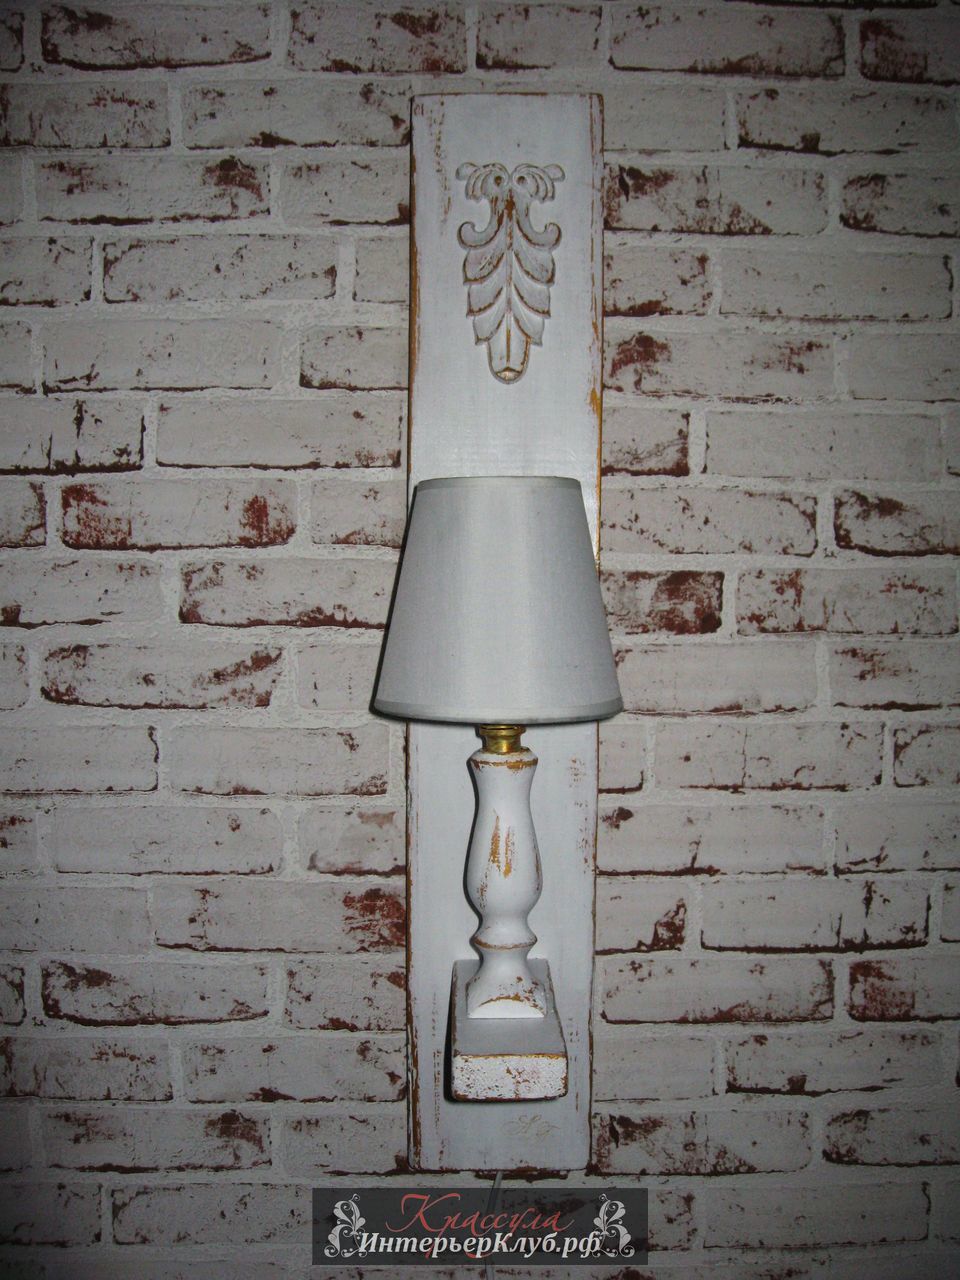 24 Светильник  Белз - амбарная доска, с элементами декора, цвет белый с золотом.  Эксклюзивные светильники ручной работы, авторские светильники ручной работы